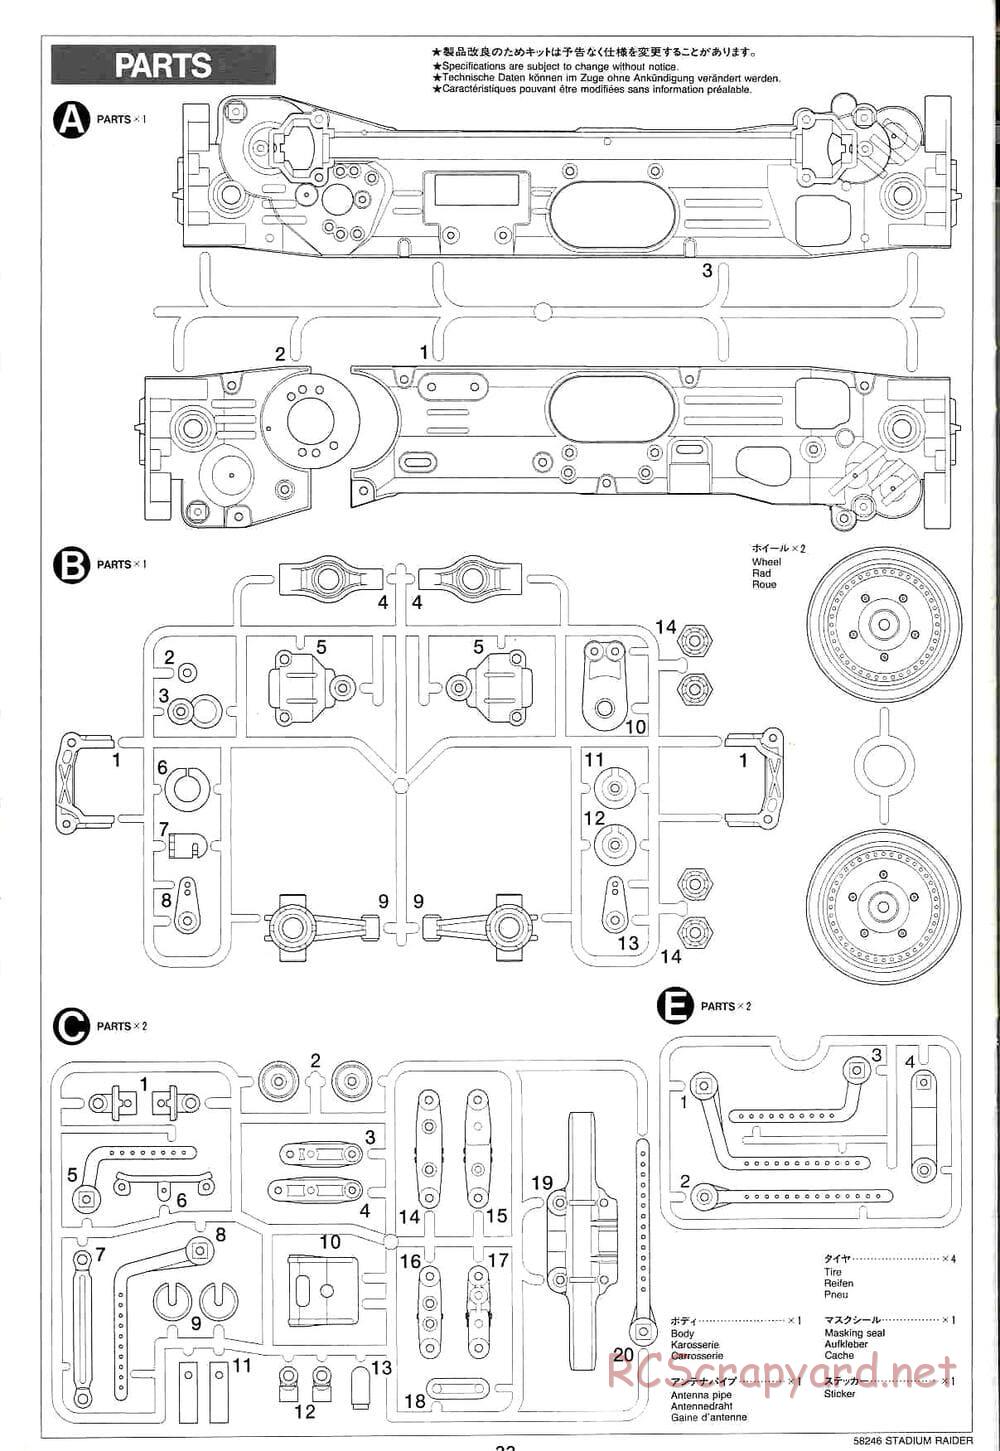 Tamiya - Stadium Raider - TL-01 Chassis - Manual - Page 22